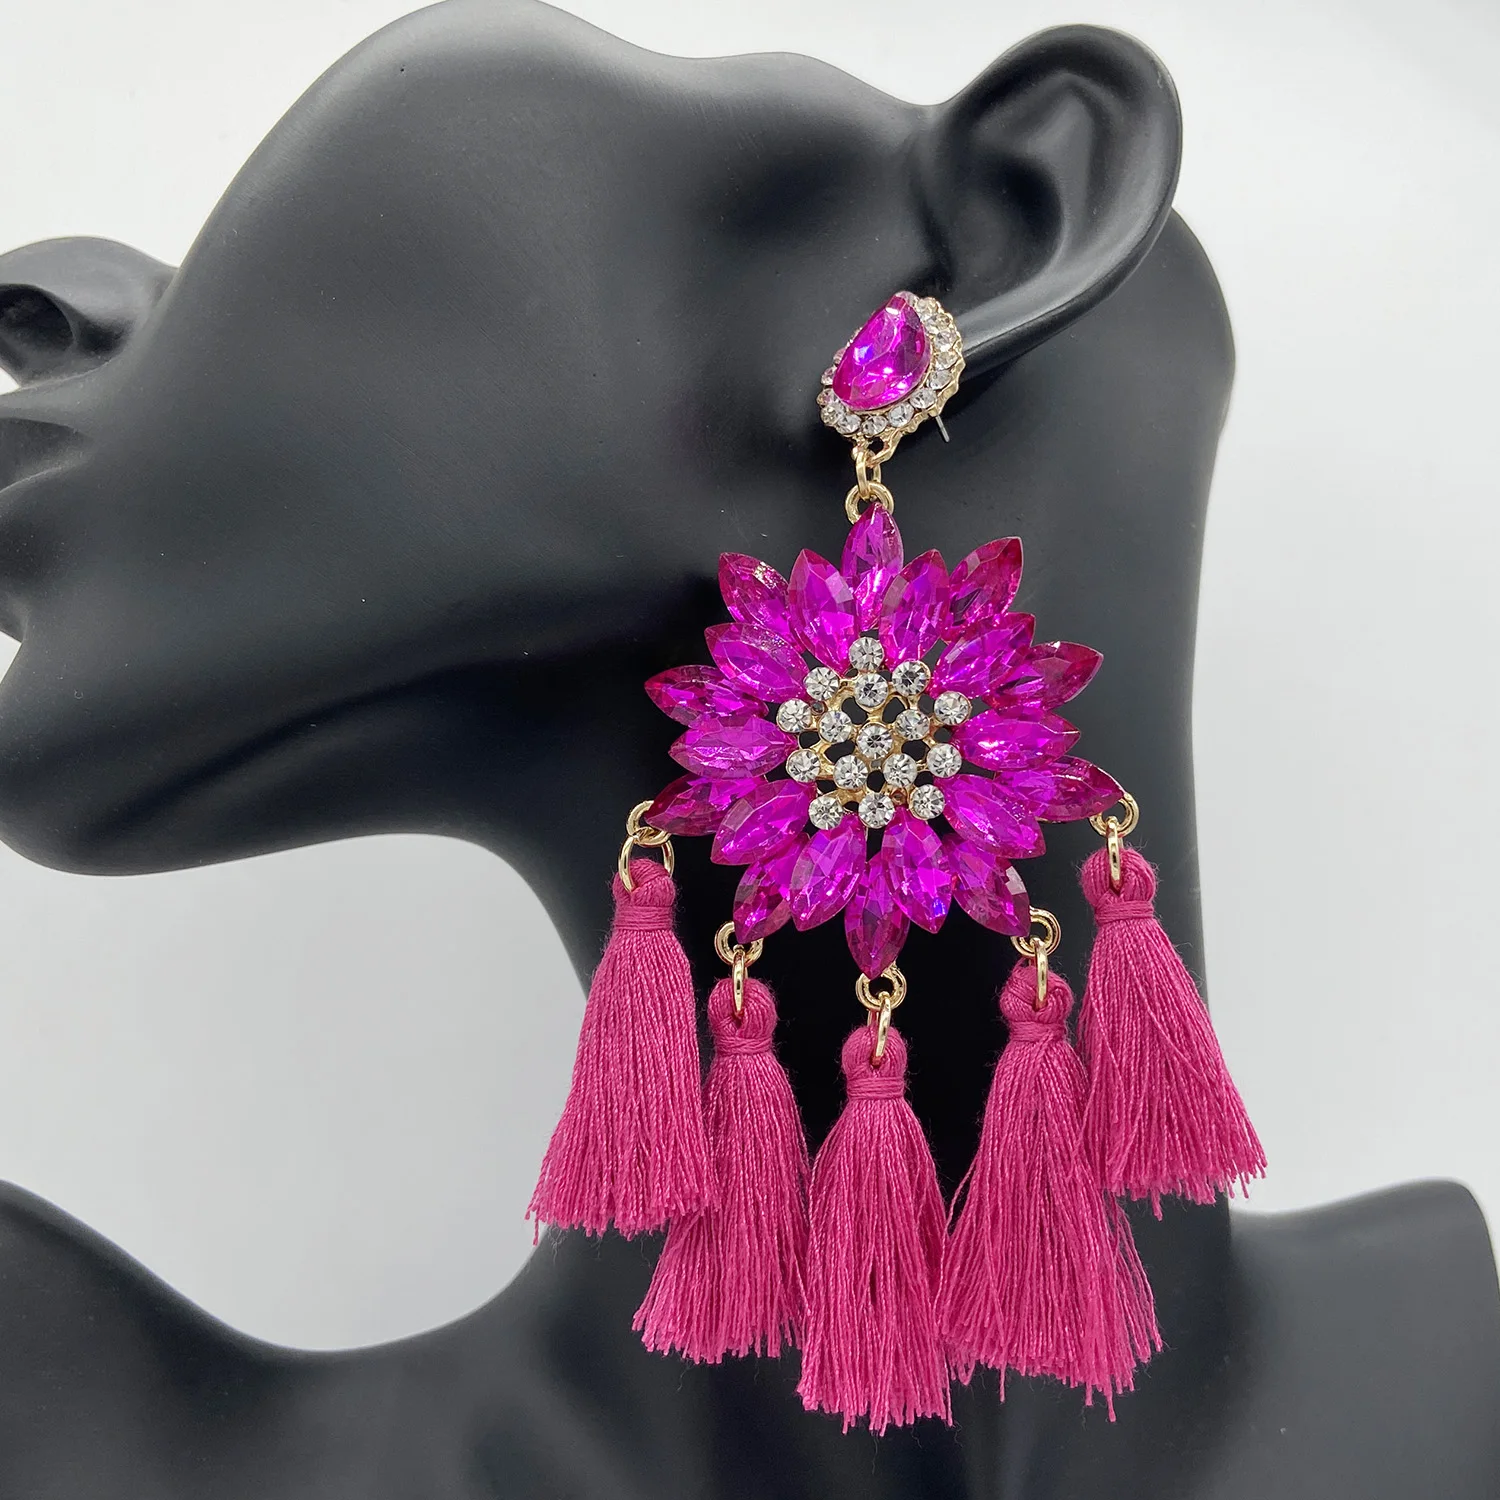 

New Fringed Statement Earrings Wedding Rhinestone Tassel Multicolored Hot Fashion Drop Earrings Party Jewelry for Women Trend